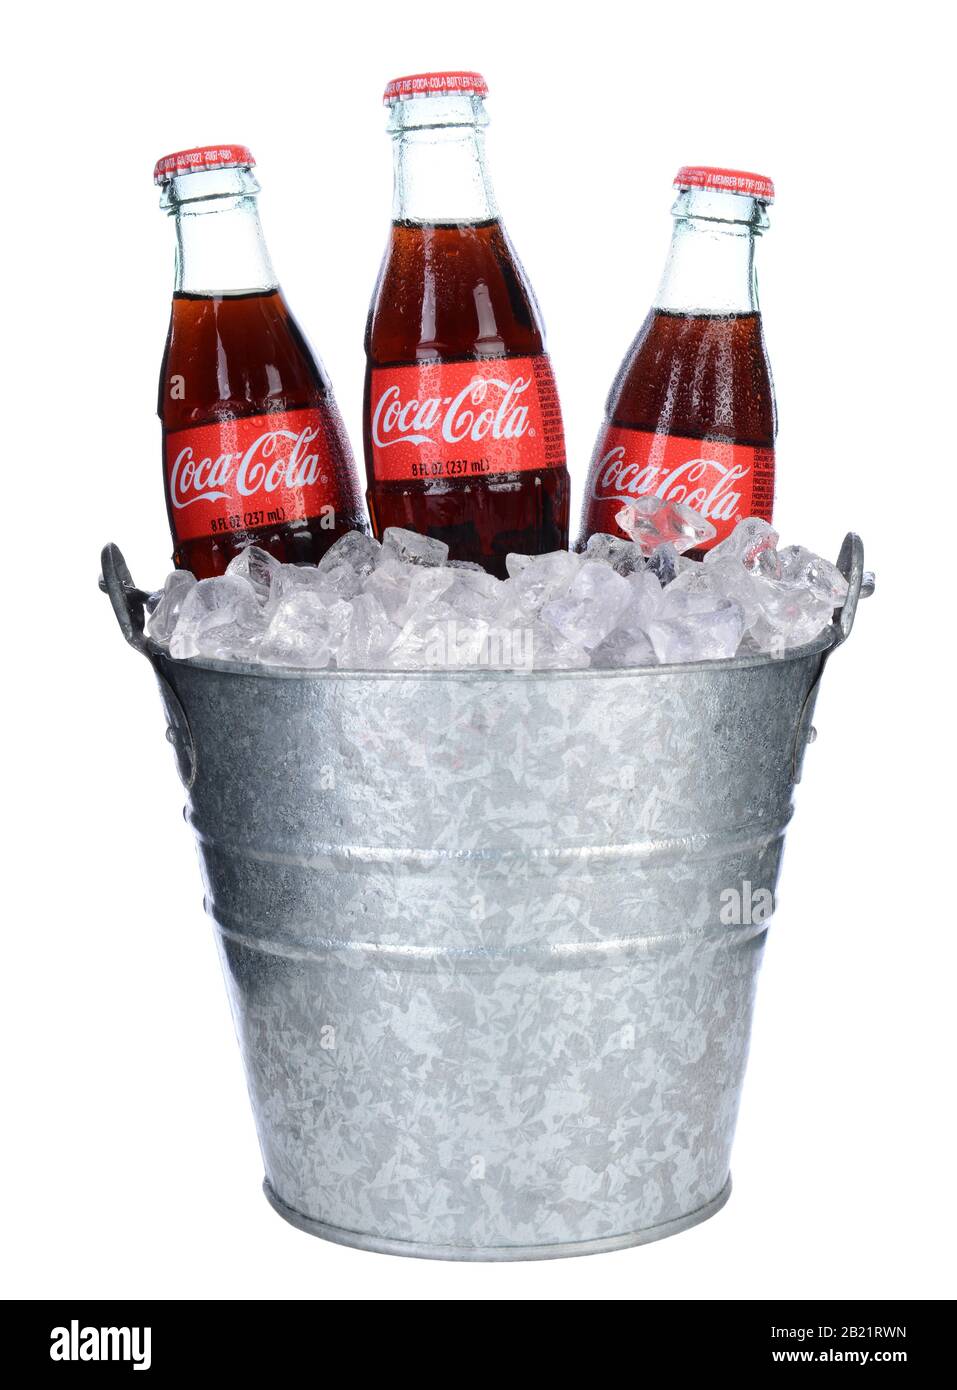 Irvine, CA - 06 février 2014 : trois bouteilles de Coca-Cola et seau à glace. Le coke est l'une des boissons sans alcool les plus populaires au monde. Banque D'Images